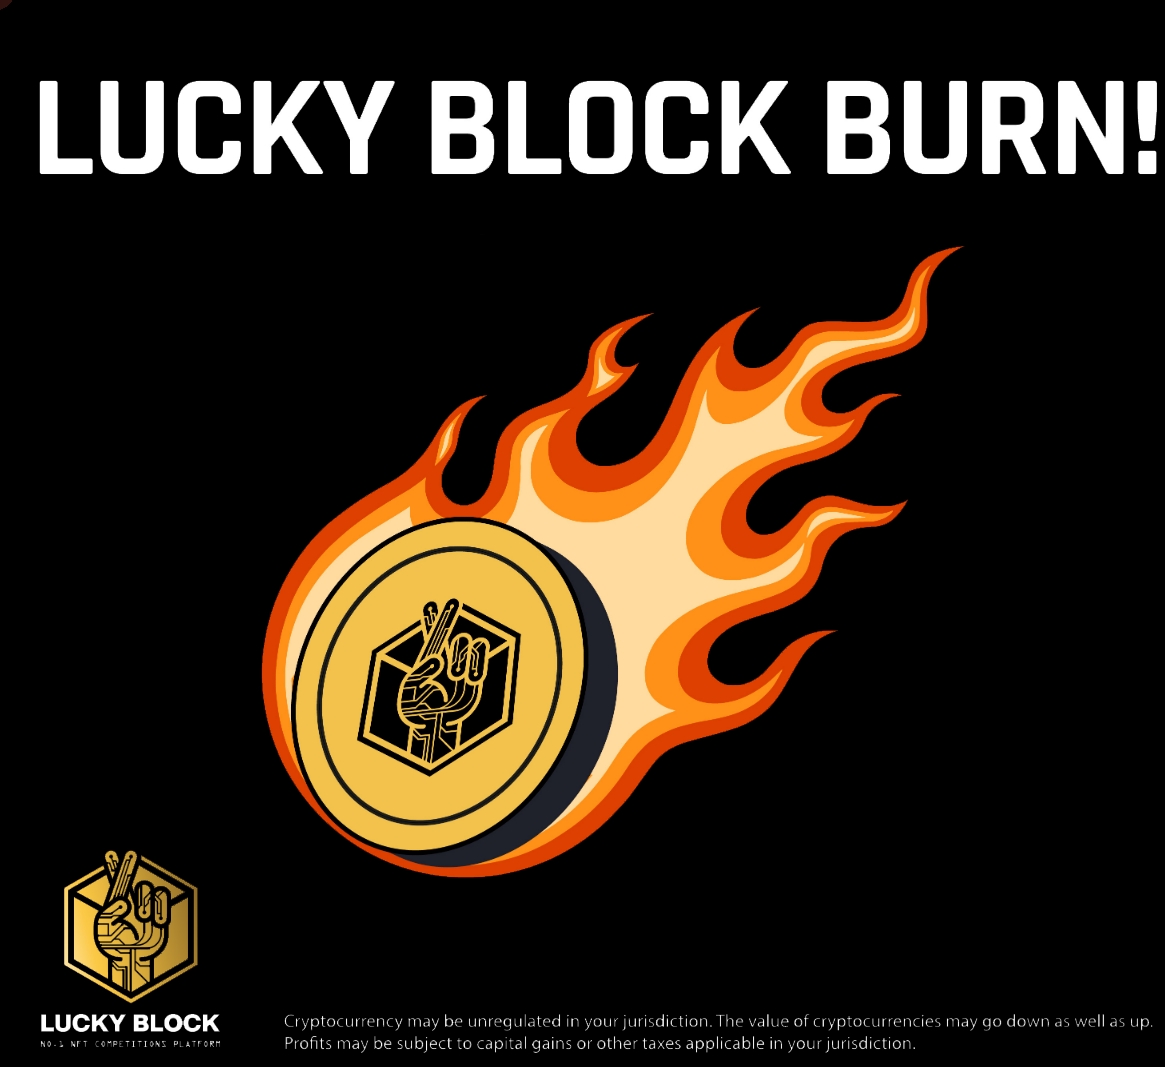 Lucky Block burn